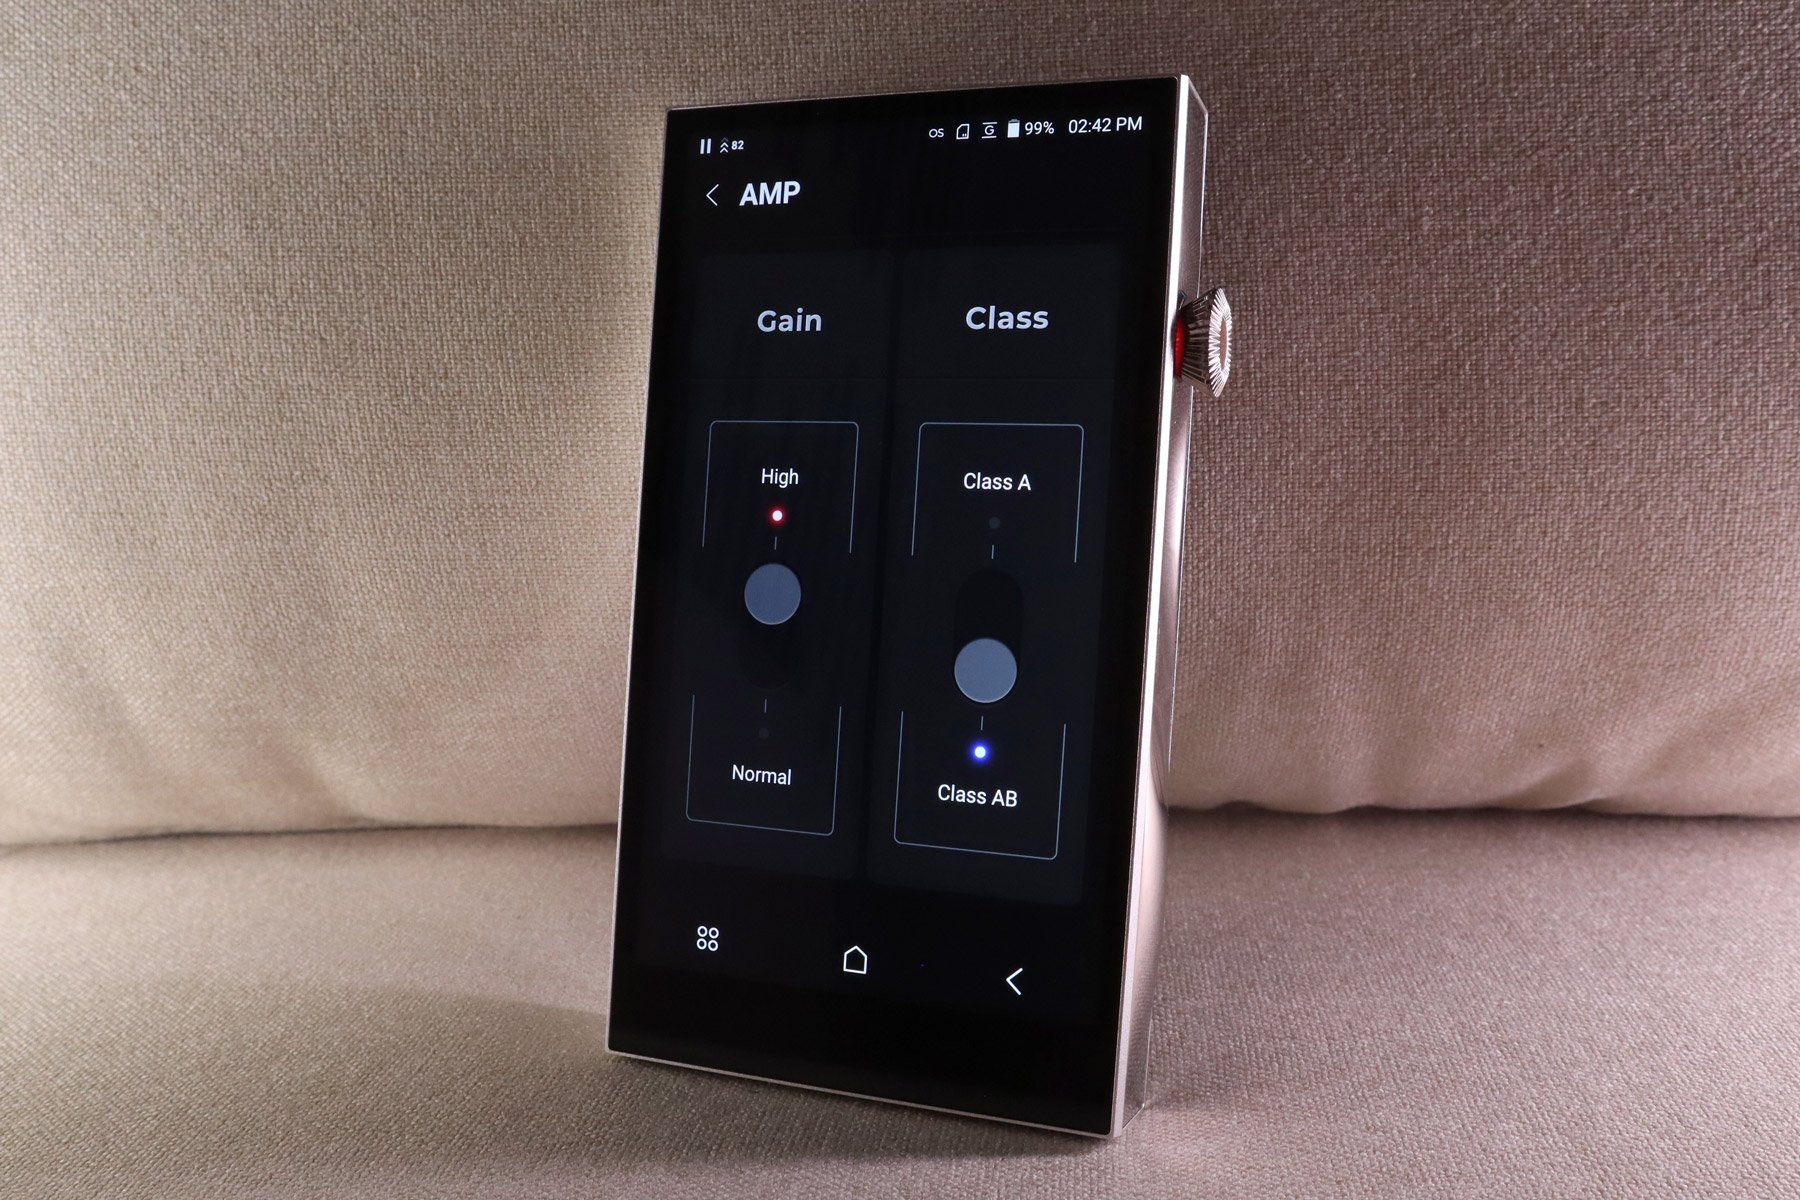 韓國品牌 Astell&Kern 最近推出了 A&norma 系列播放器 SR35，以及自家開發的耳機作品第 2 代 AK Zero2，兩者均傳承系列精神，並加入創新的設計，主打入門市場，讓初次接觸個人音頻設備的用家有更好的選擇。